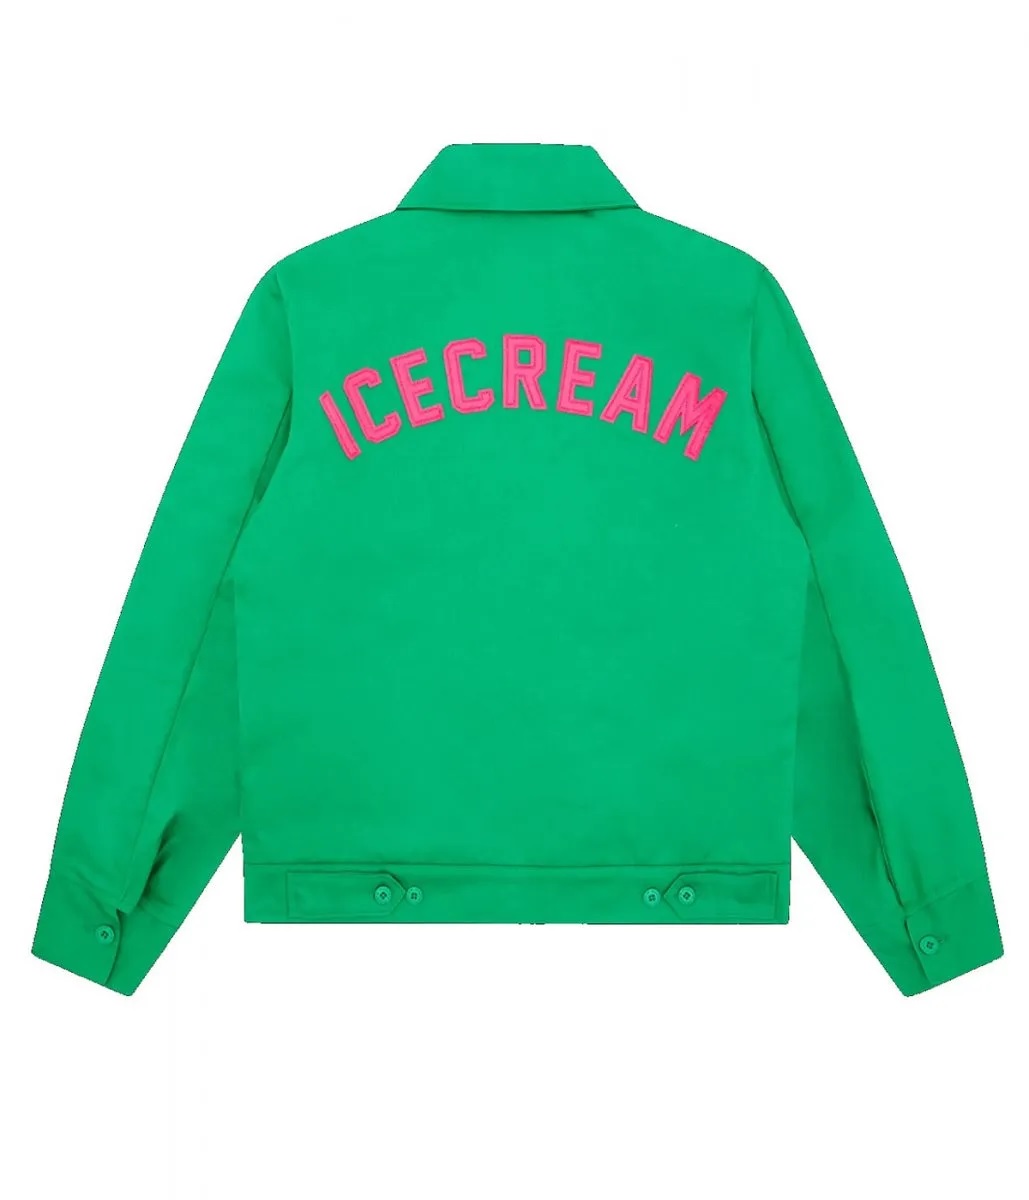 BBC Icecream Work Green Jacket